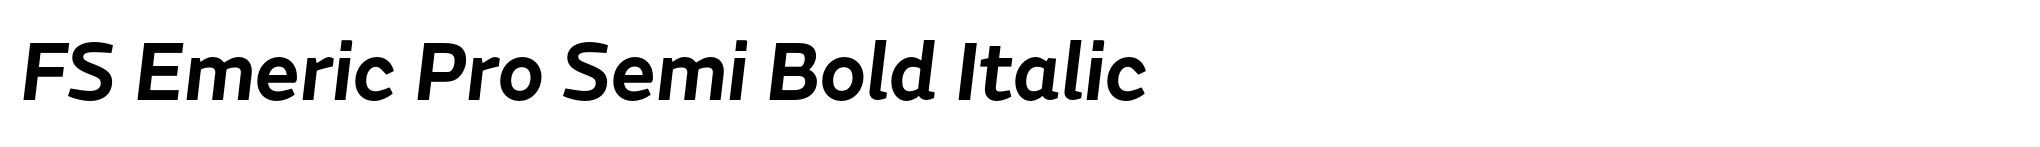 FS Emeric Pro Semi Bold Italic image